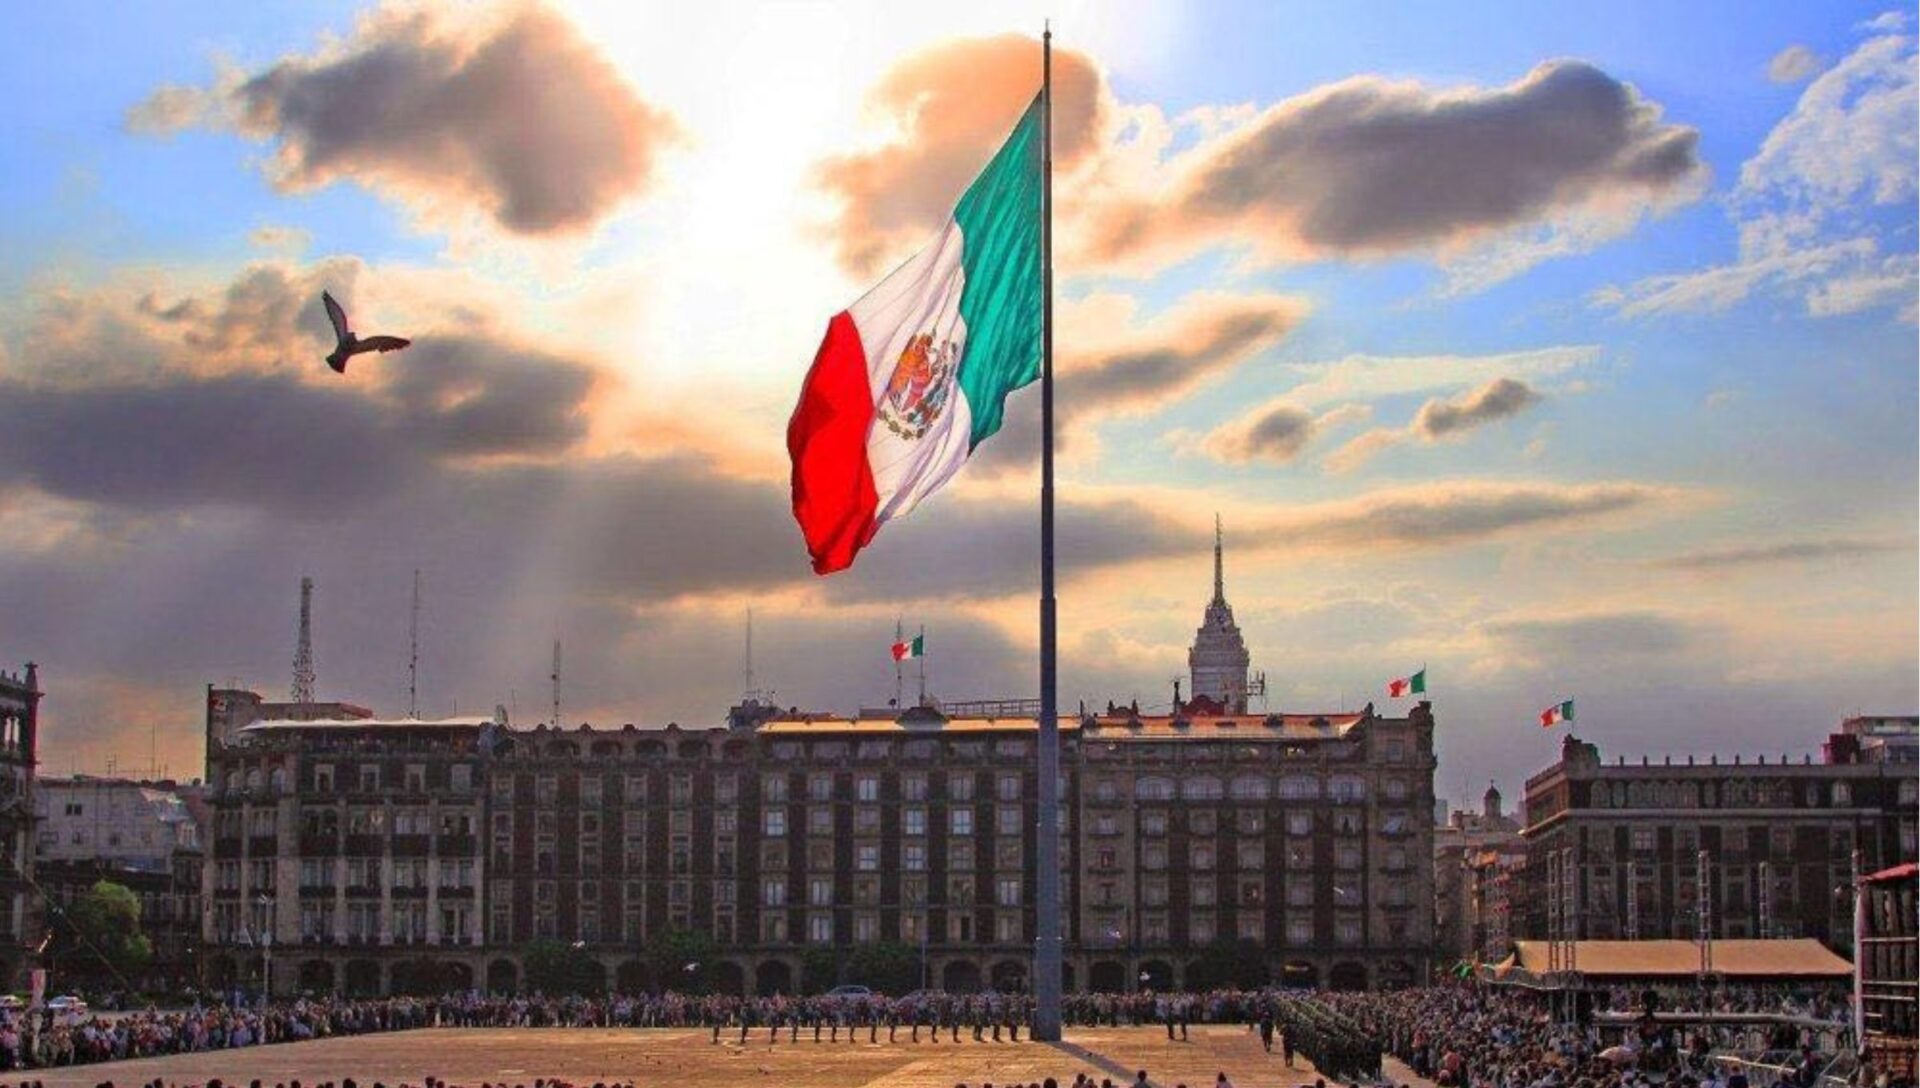 Bandera se izará en el Zócalo durante ‘Marea Rosa’: AMLO